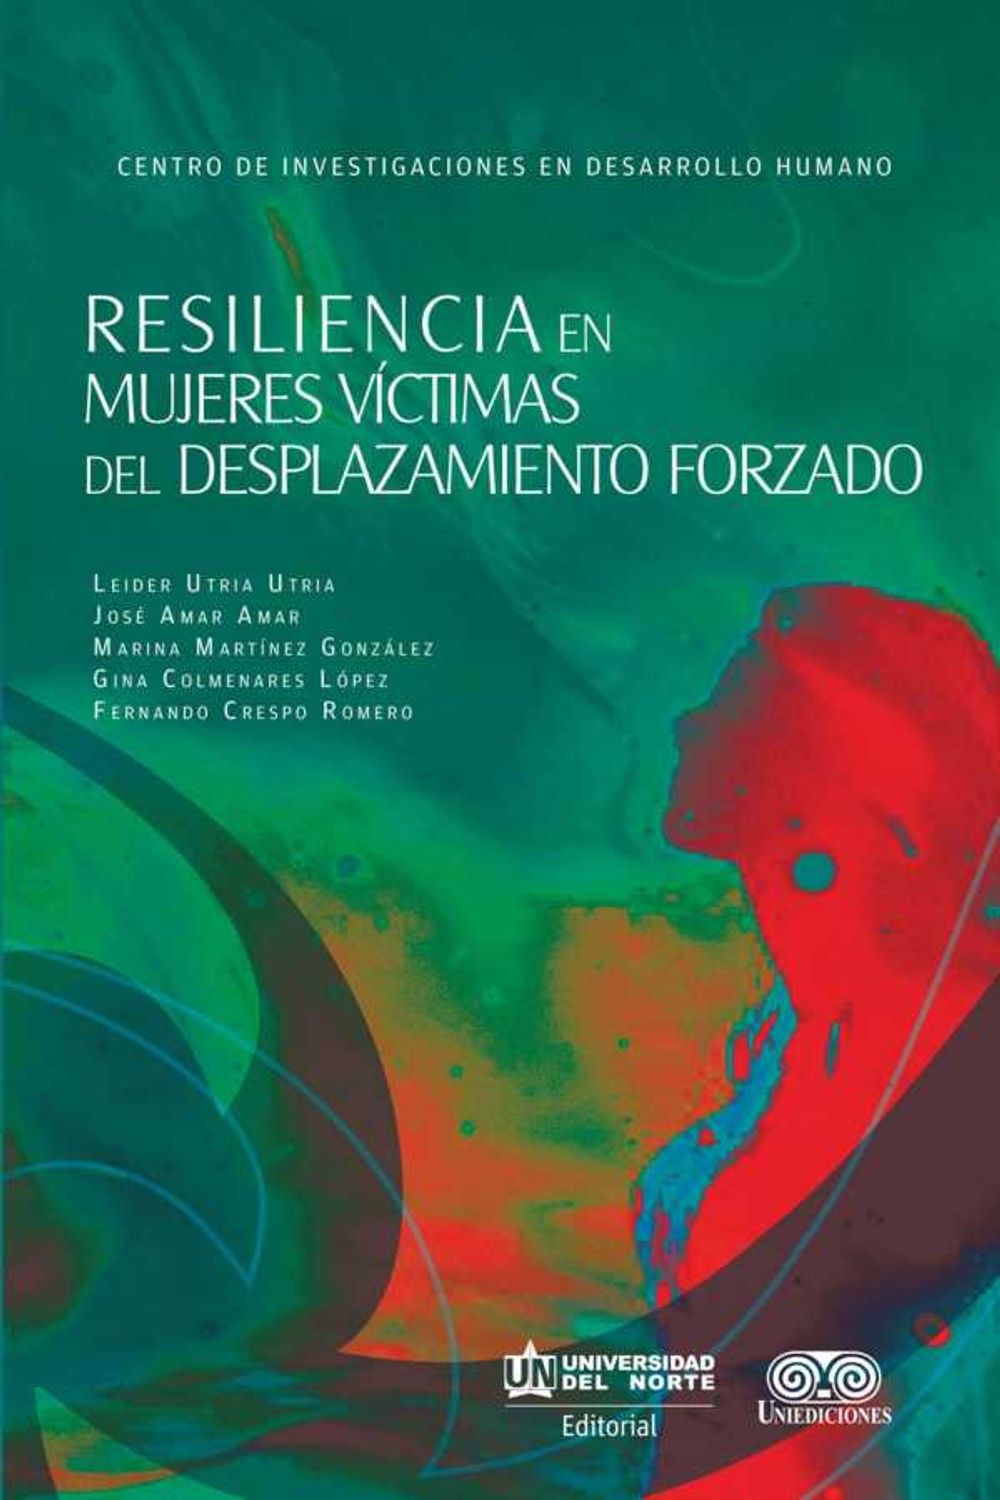 bw-resiliencia-en-mujeres-viacutectimas-del-desplazamiento-forzado-u-del-norte-editorial-9789587415810